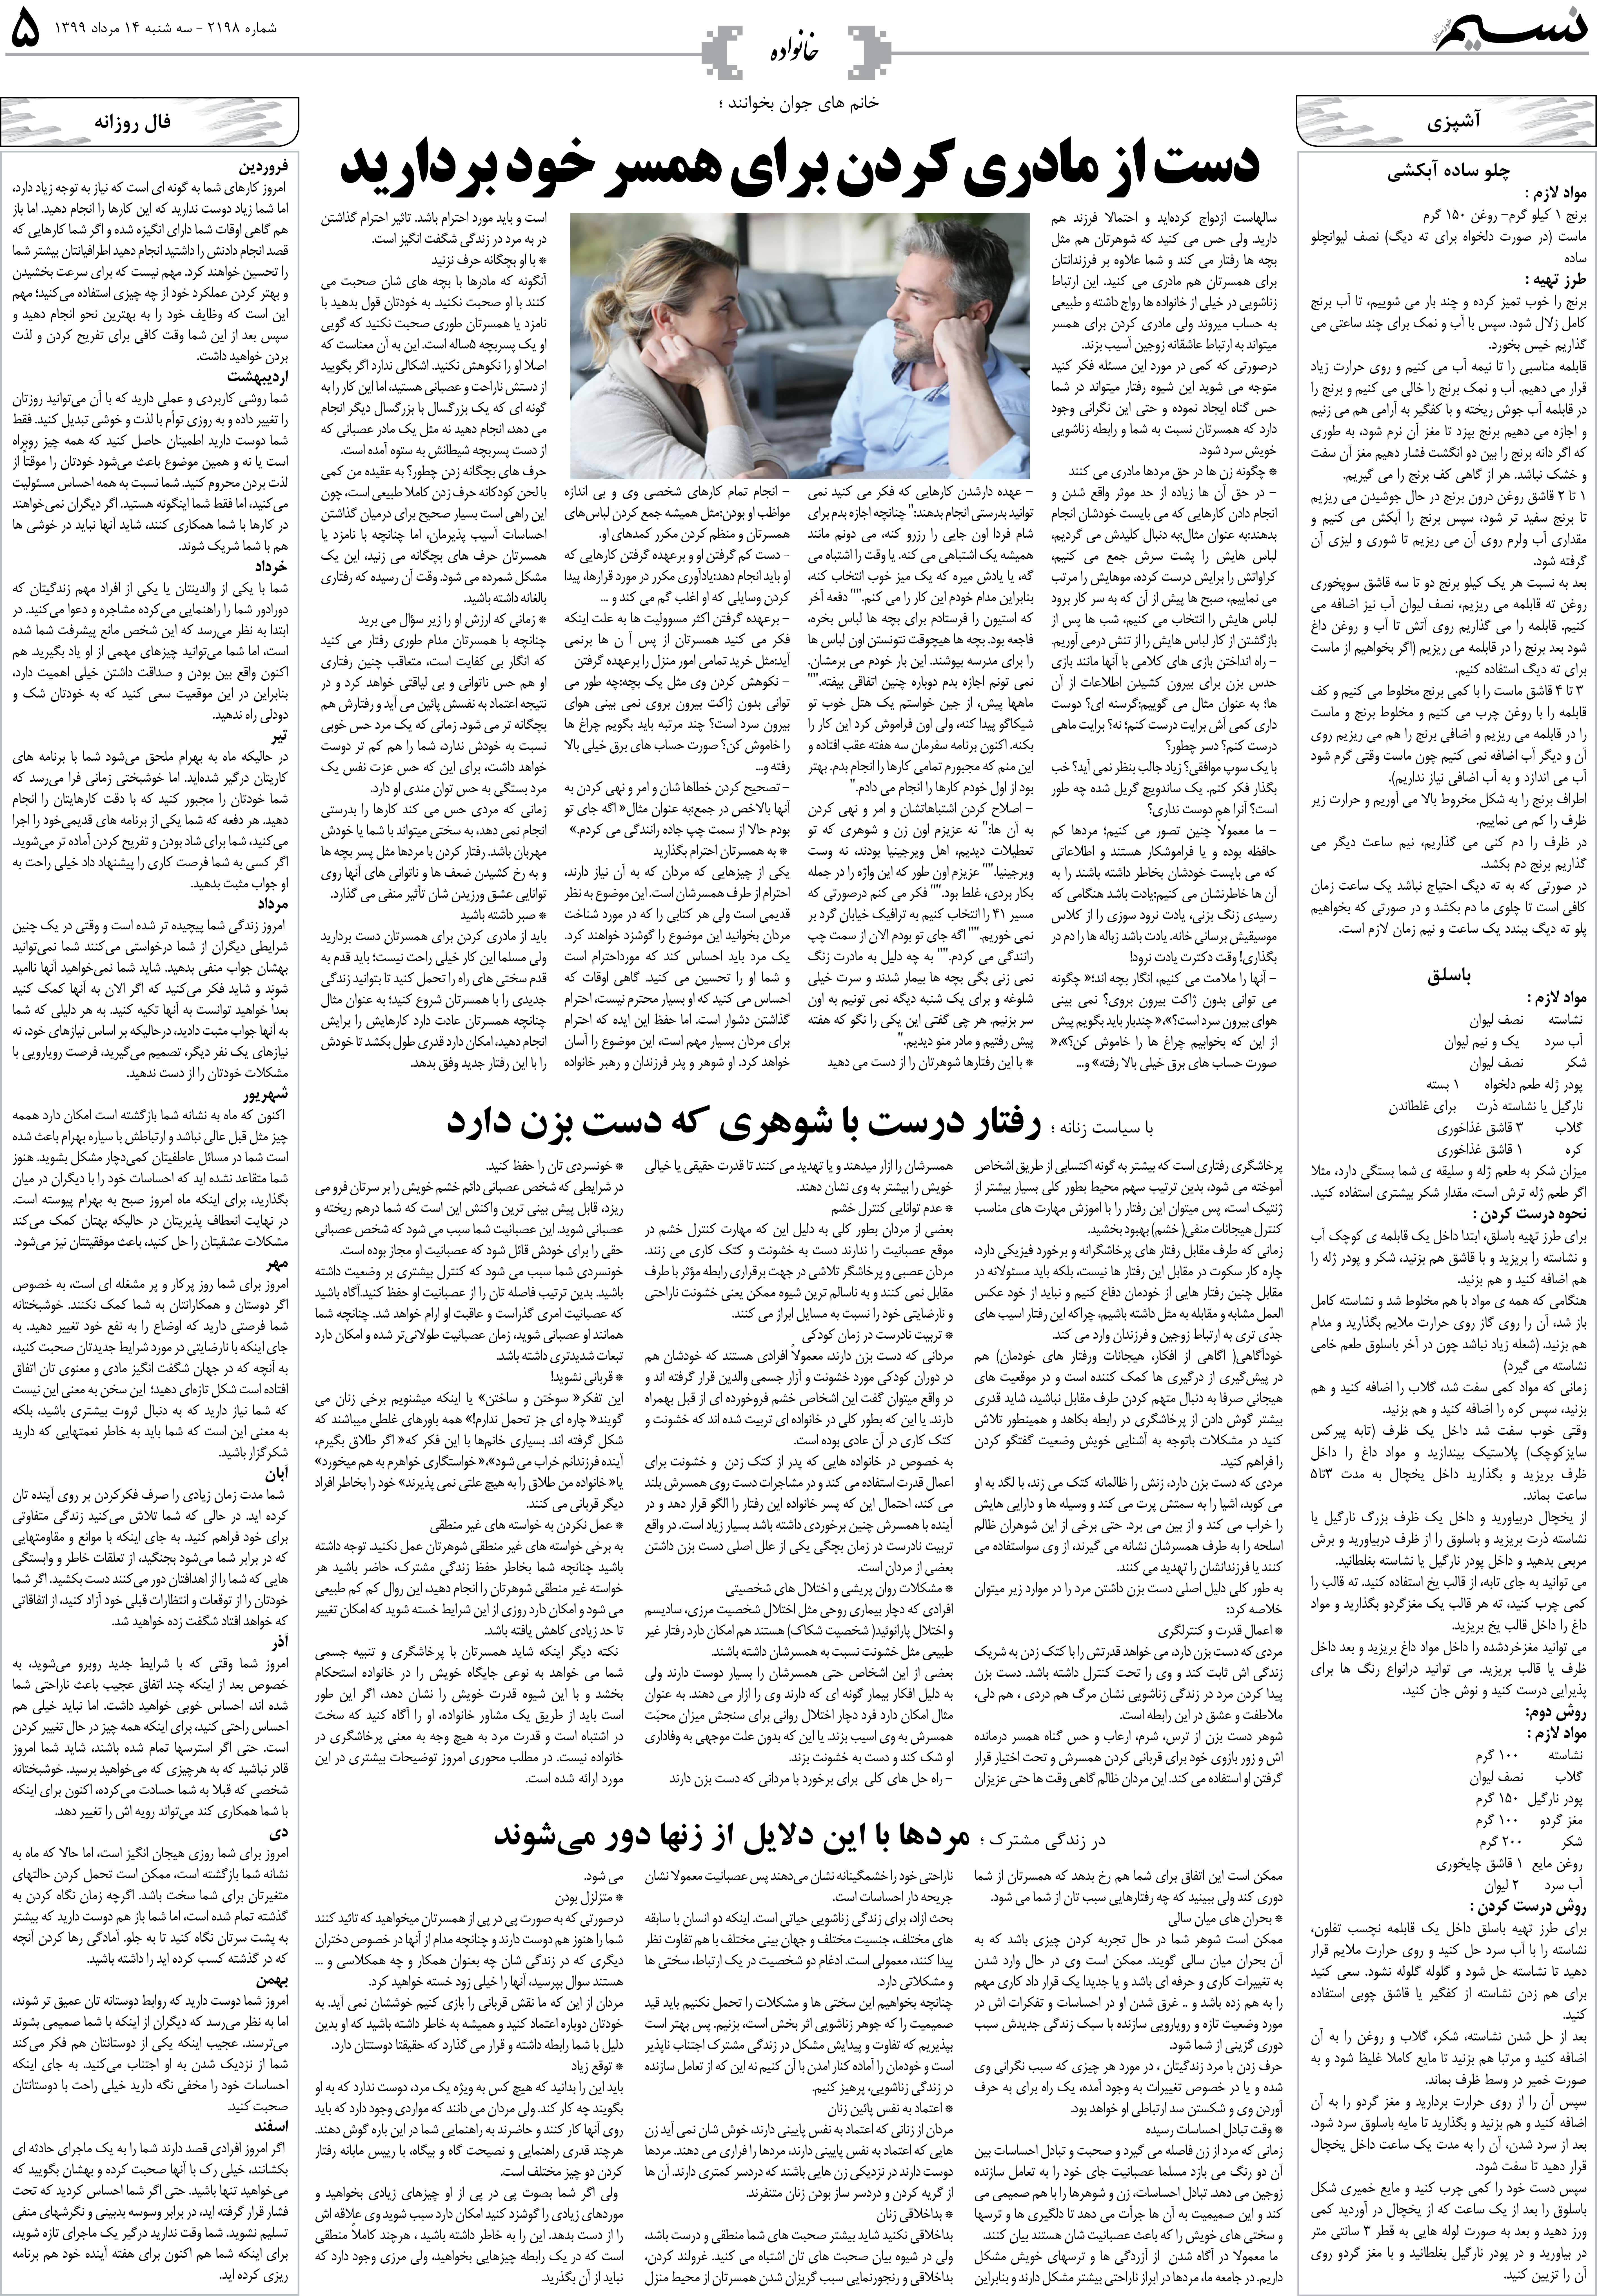 صفحه خانواده روزنامه نسیم شماره 2198